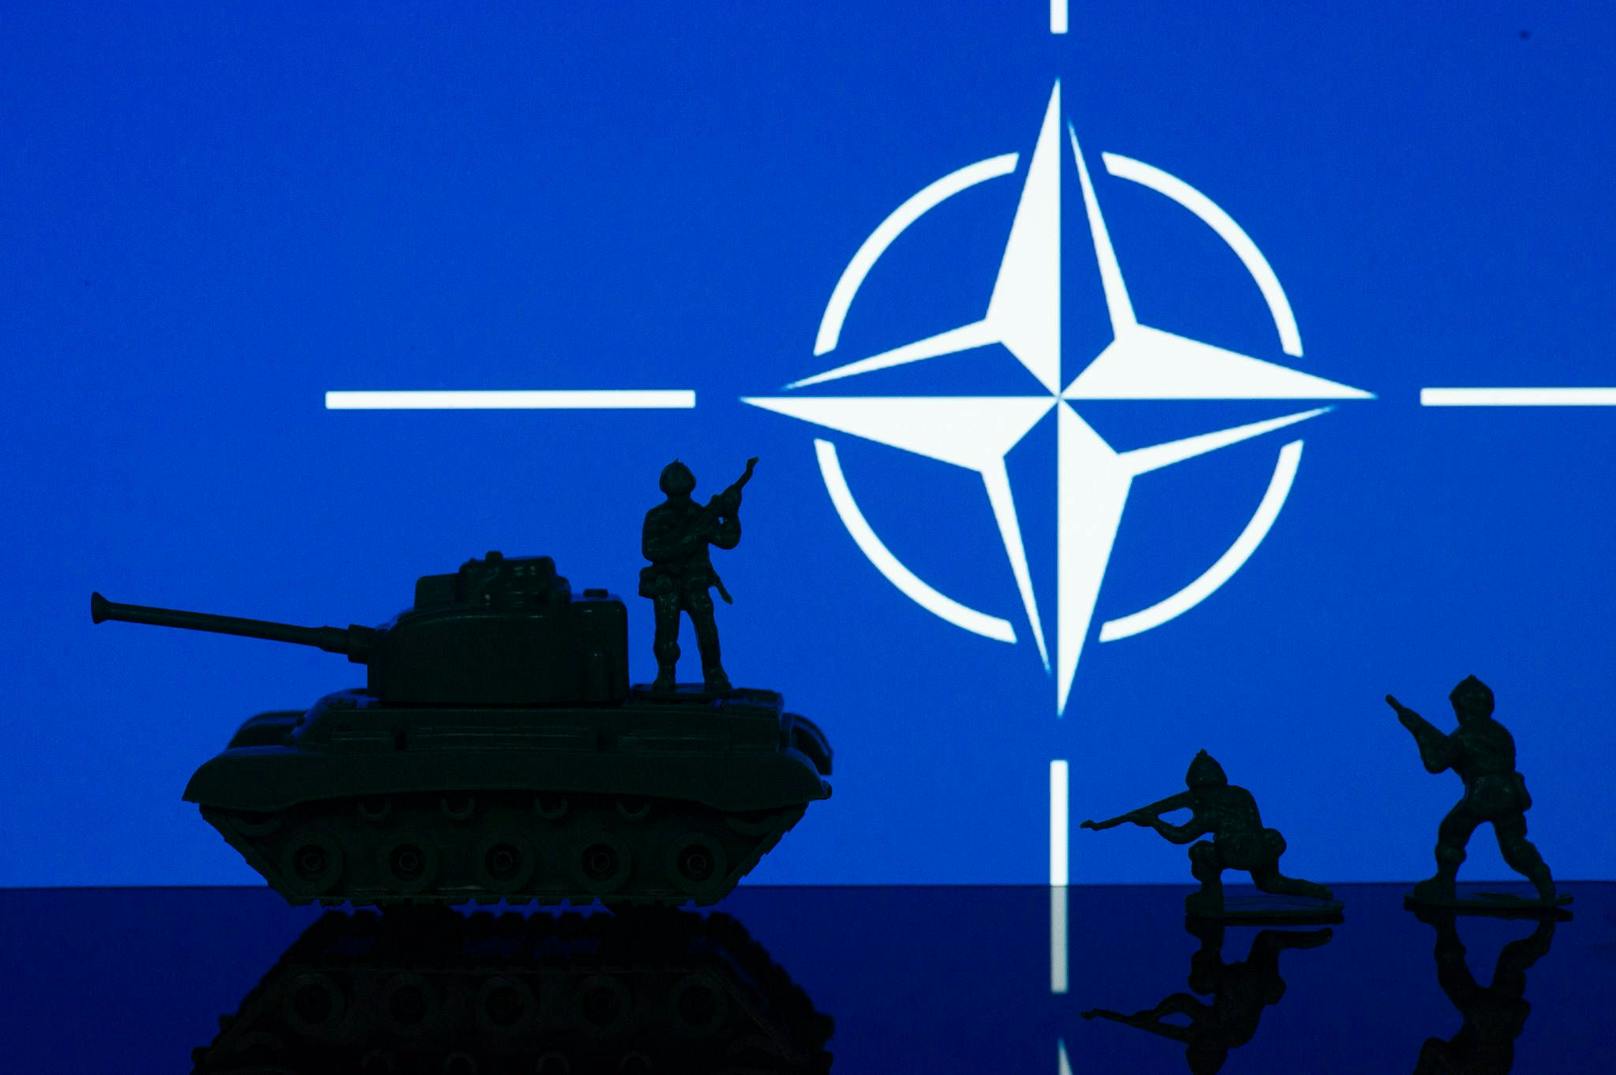 Gleichzeitig machen Berichte die Runde, dass sich die NATO erstmals seit dem Kalten Krieg auf einen Angriff Russlands vorbereiten soll. <a target="_blank" data-li-document-ref="100272064" href="https://www.heute.at/g/-100272064">Mehr dazu HIER &gt;&gt;</a>